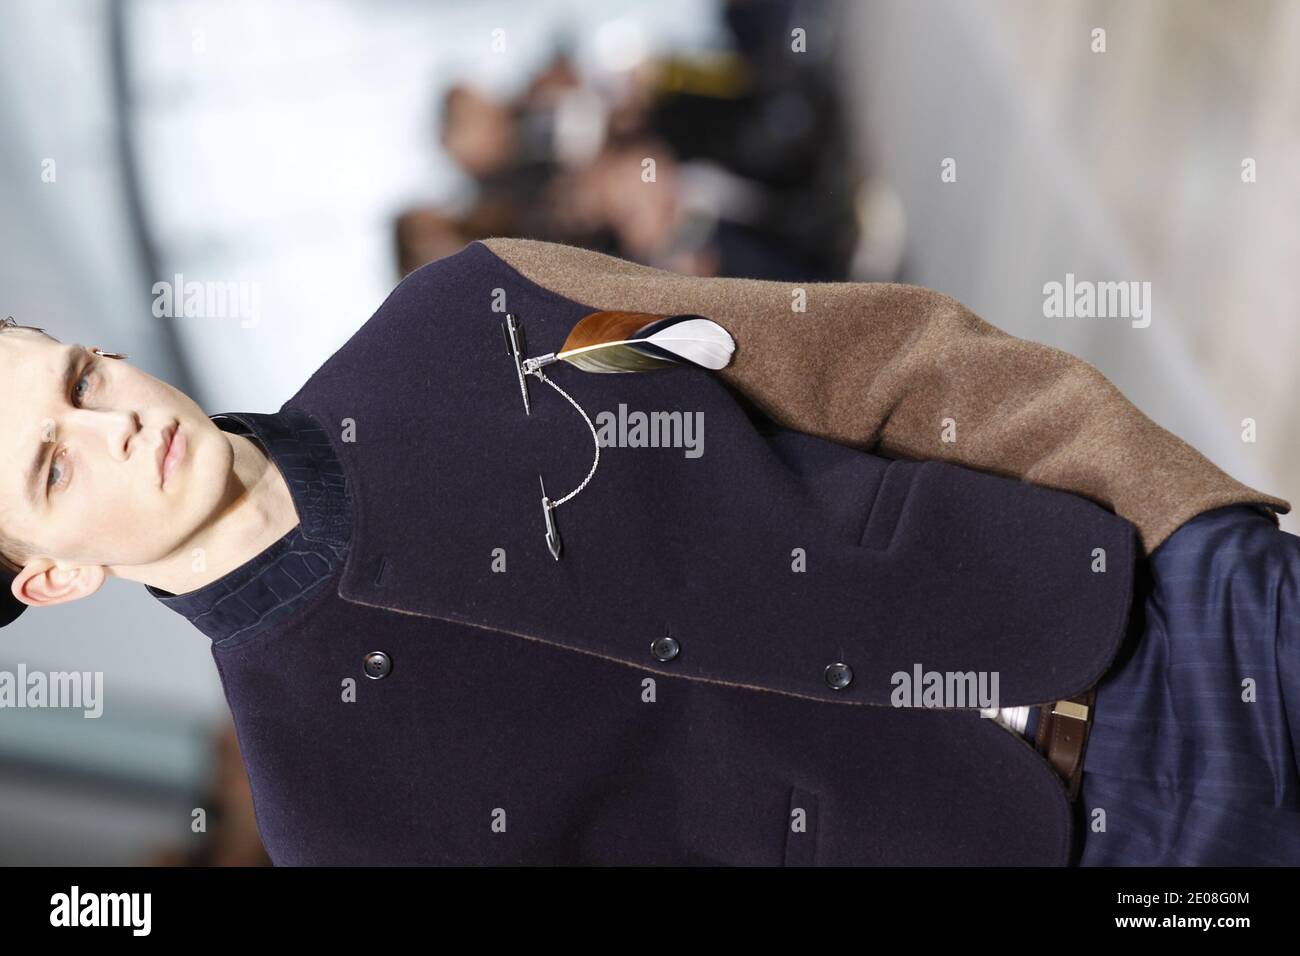 Louis Vuitton Fall 2013 Men. grey suit